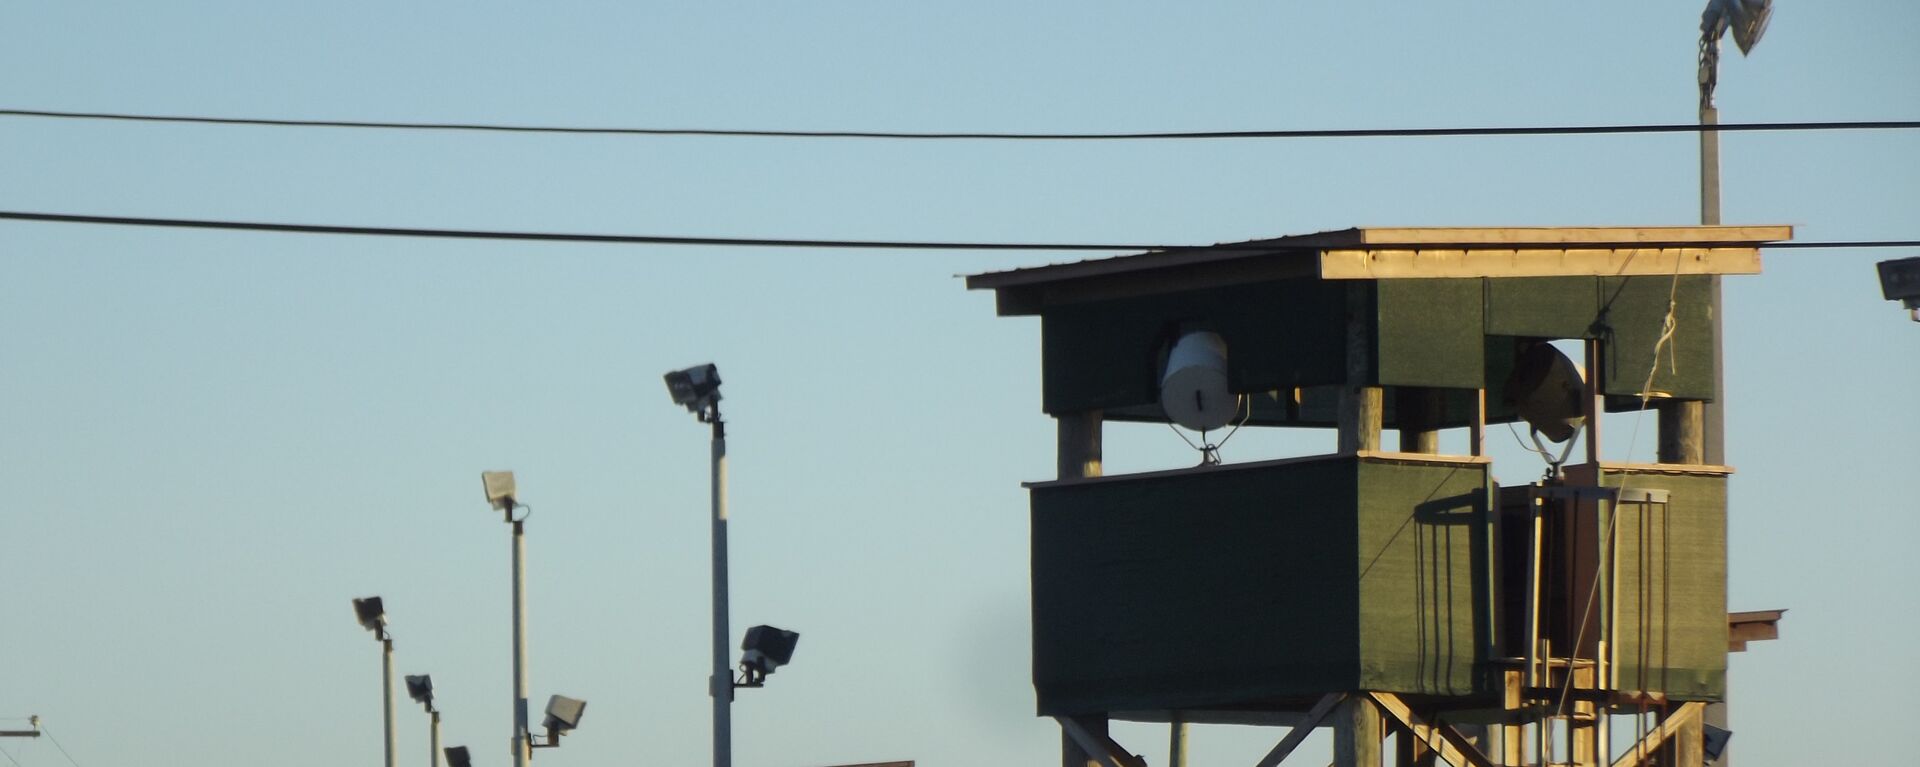 Una de las torres de vigilancia del Campo 6 de Guantánamo - Sputnik Mundo, 1920, 23.02.2021